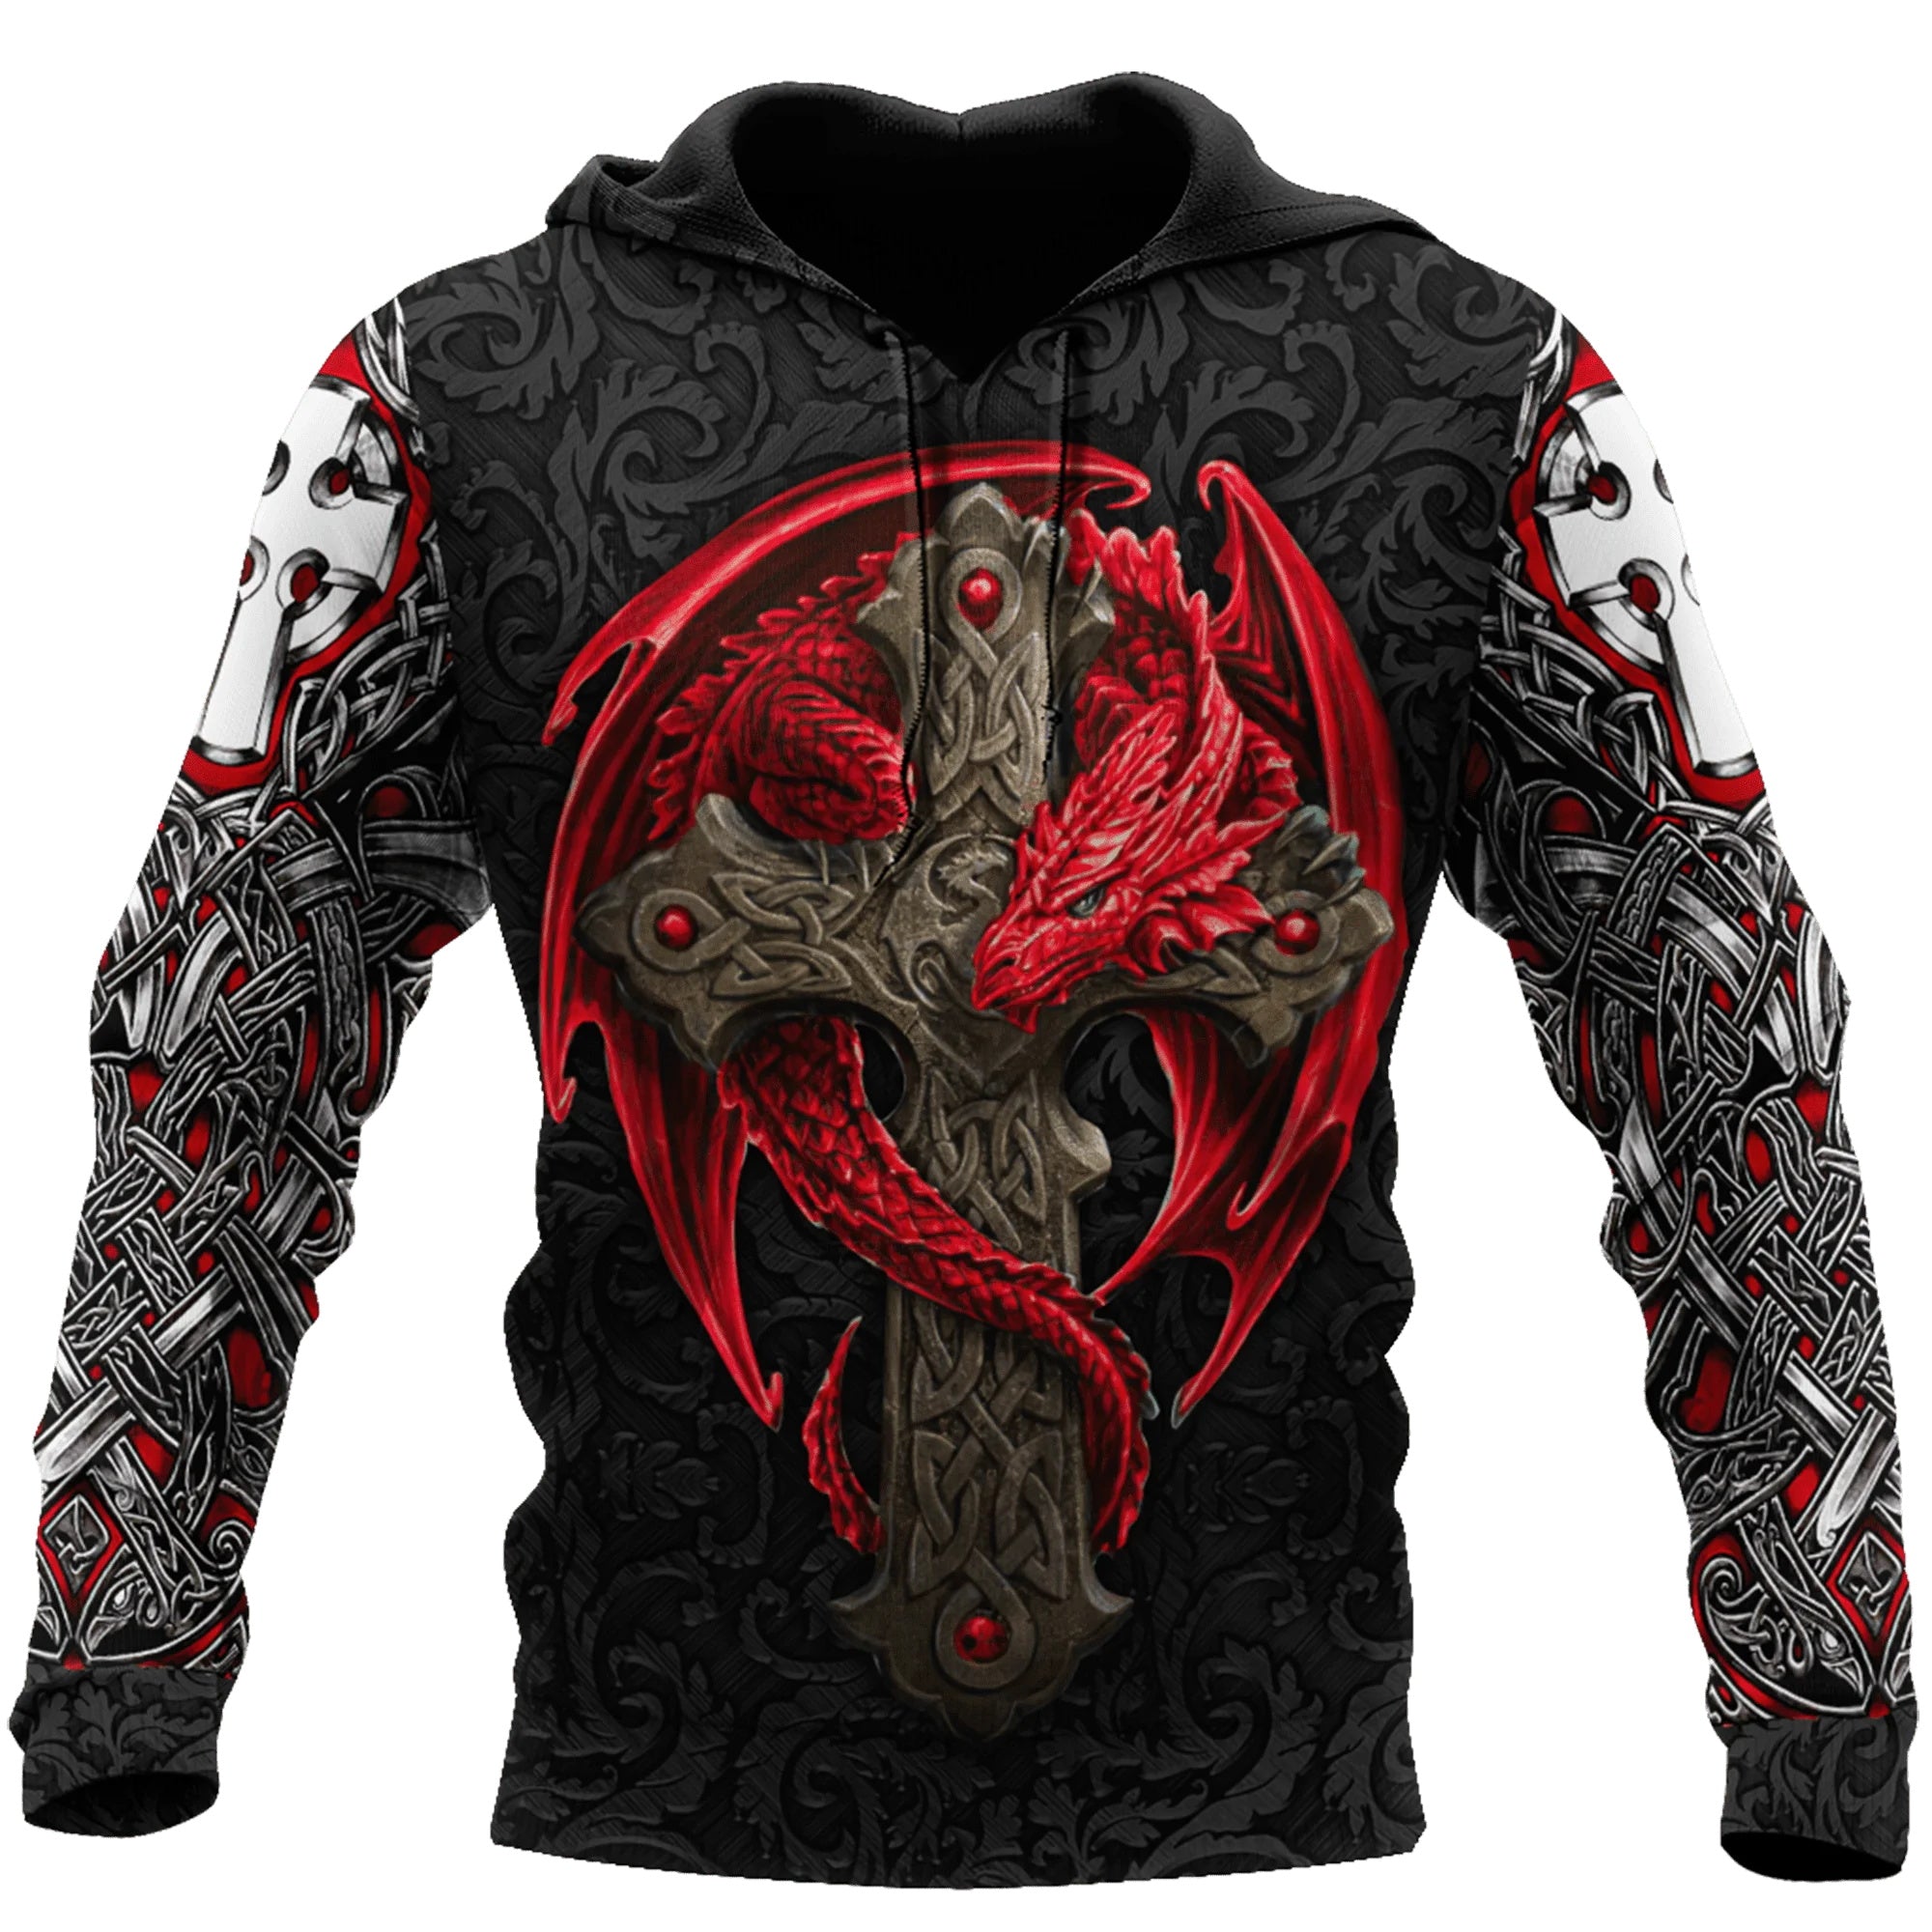 Sweat-shirt viking rouge et noir avec dragon celtique